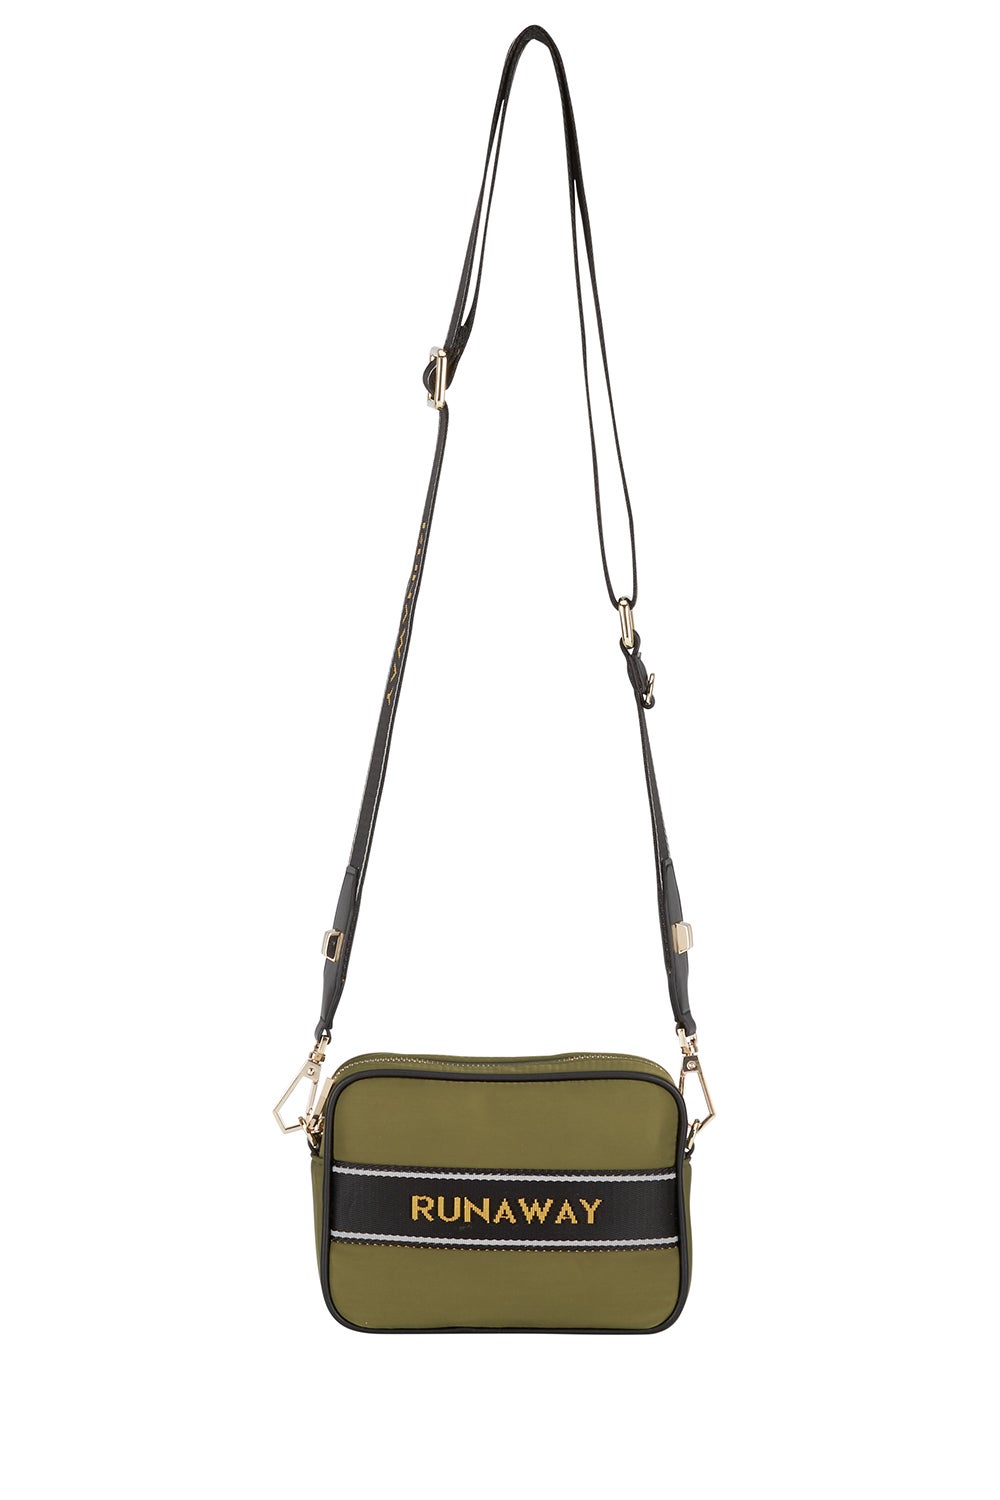 Runaway Camera Bag